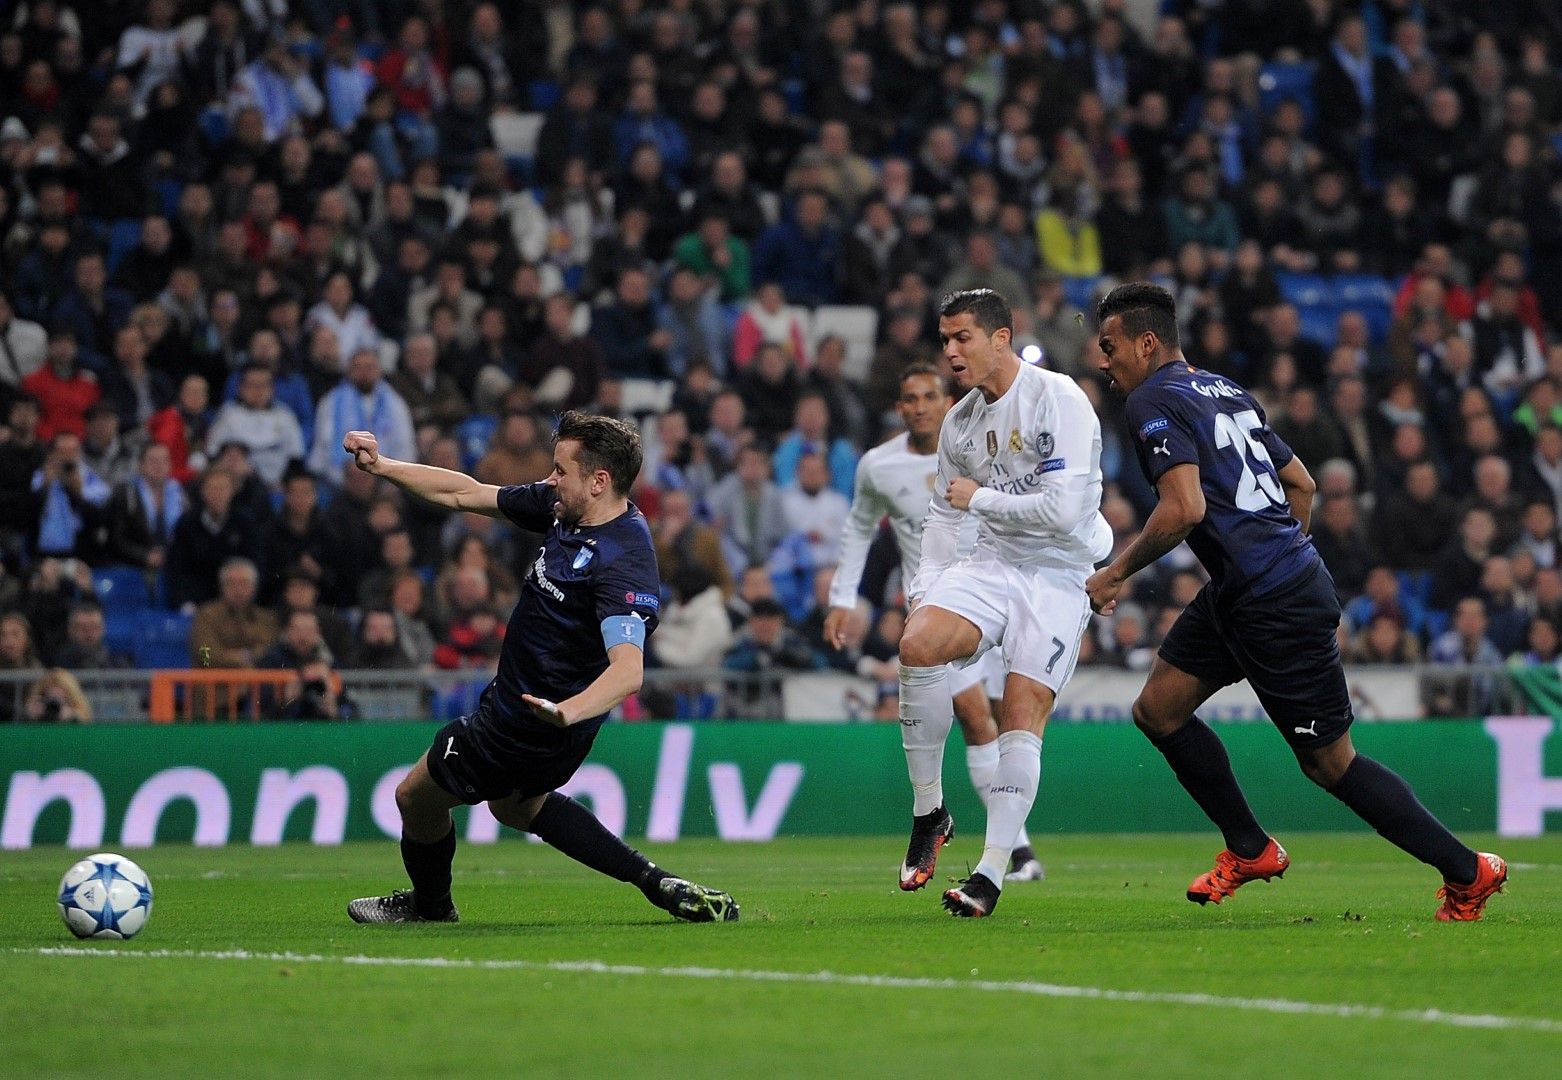 Роналдо бележи отново - Малмьо получава осем гола на "Сантяго Бернабеу" през 2015 г.